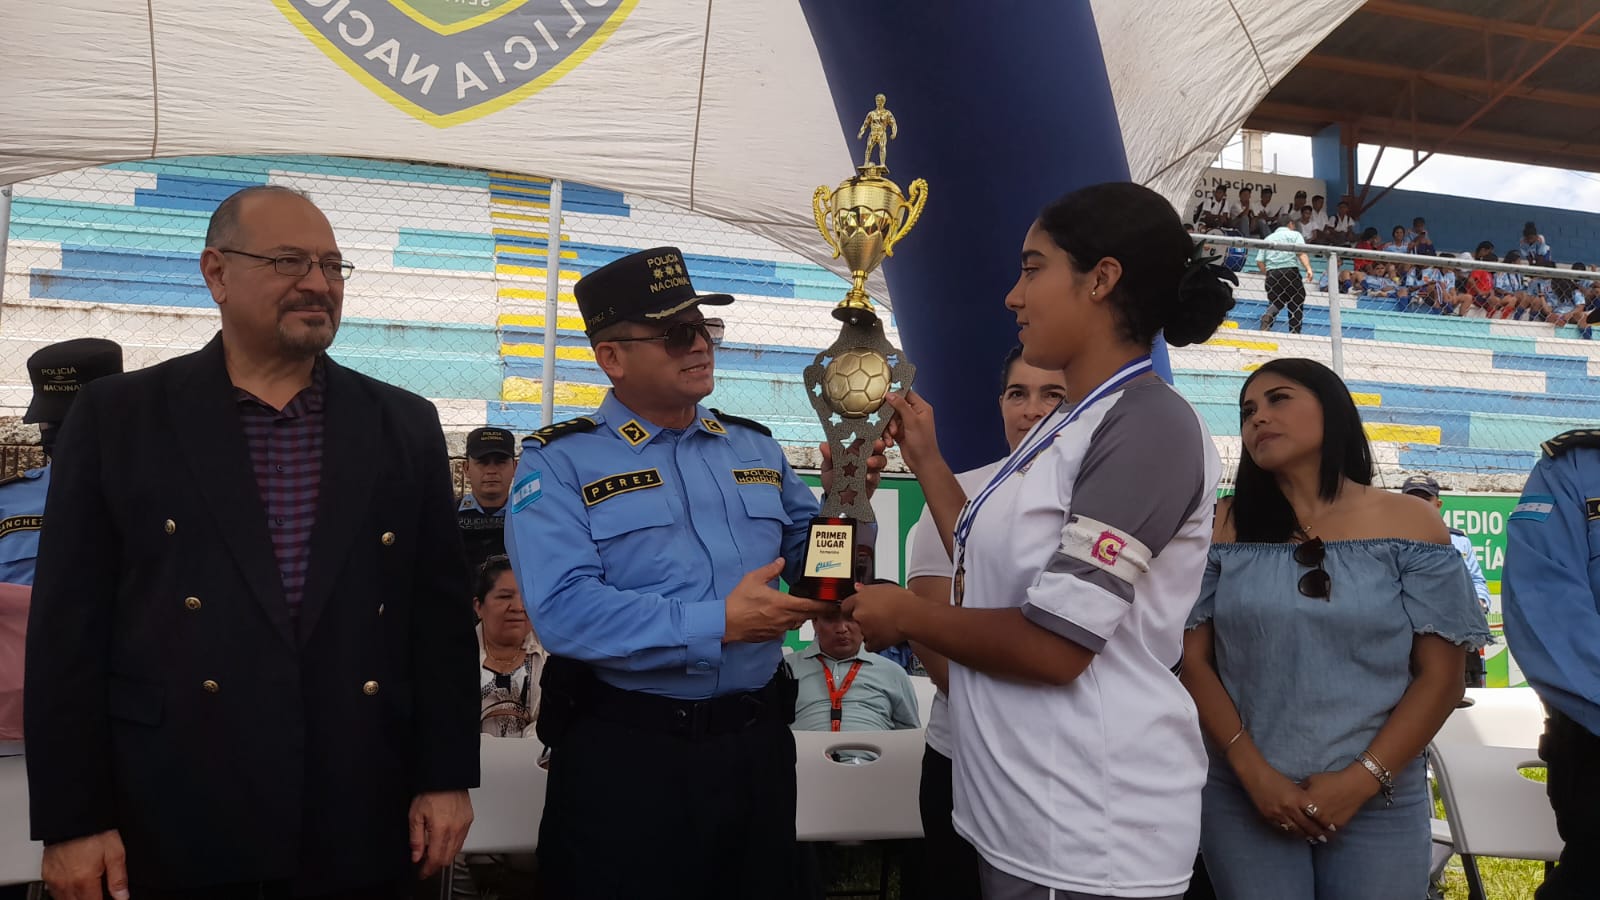 Instituto Central Vicente Cáceres ganador del primer Campeonato Intercolegial organizado por la Policía Escolar